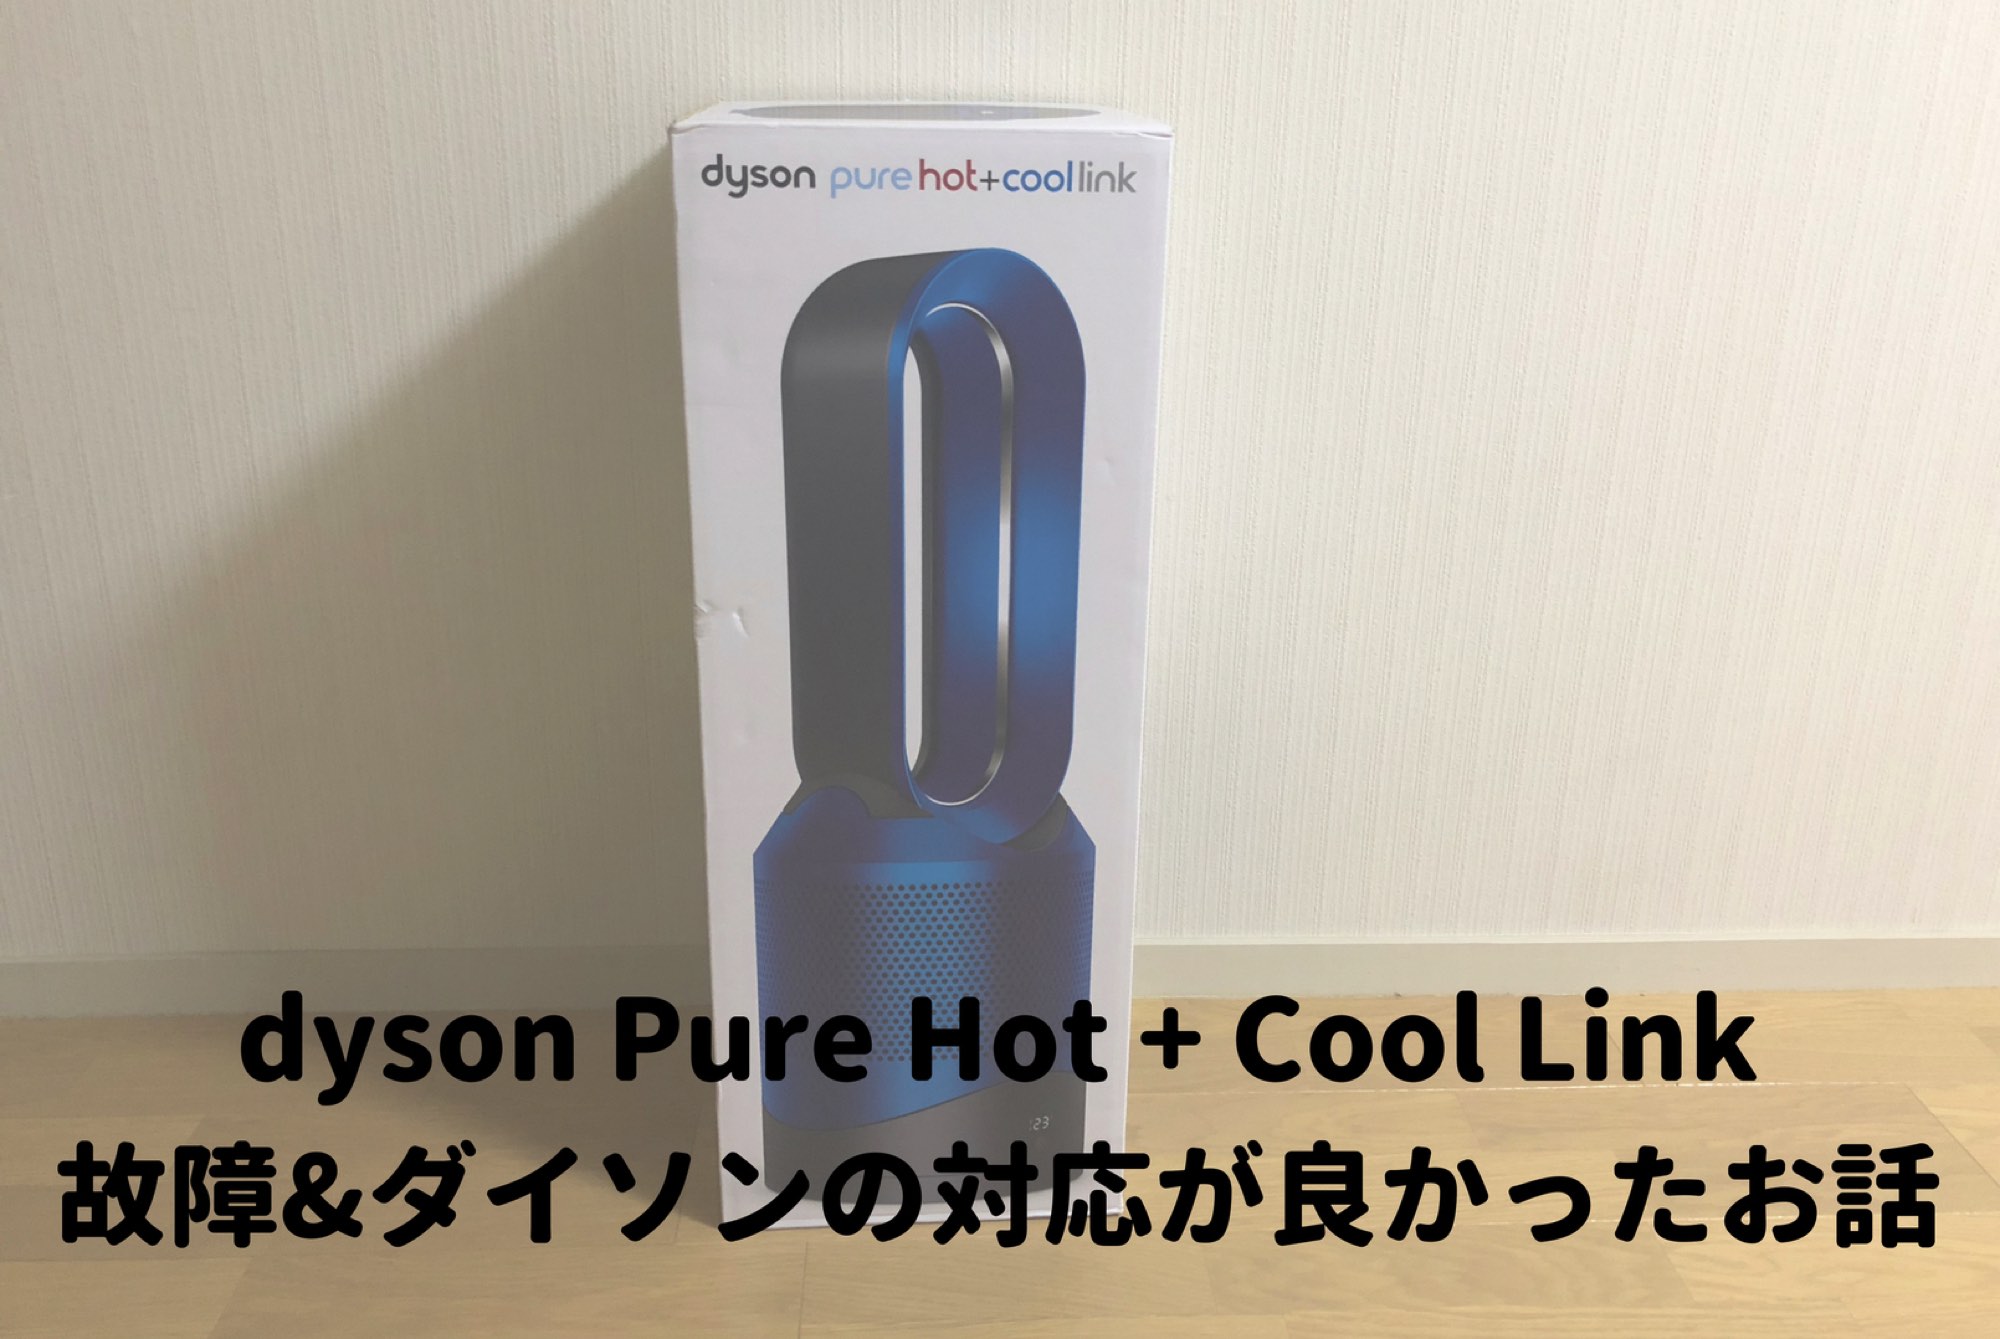 羽根の無い扇風機「dyson pure hot & coollink」が故障、ダイソンの 